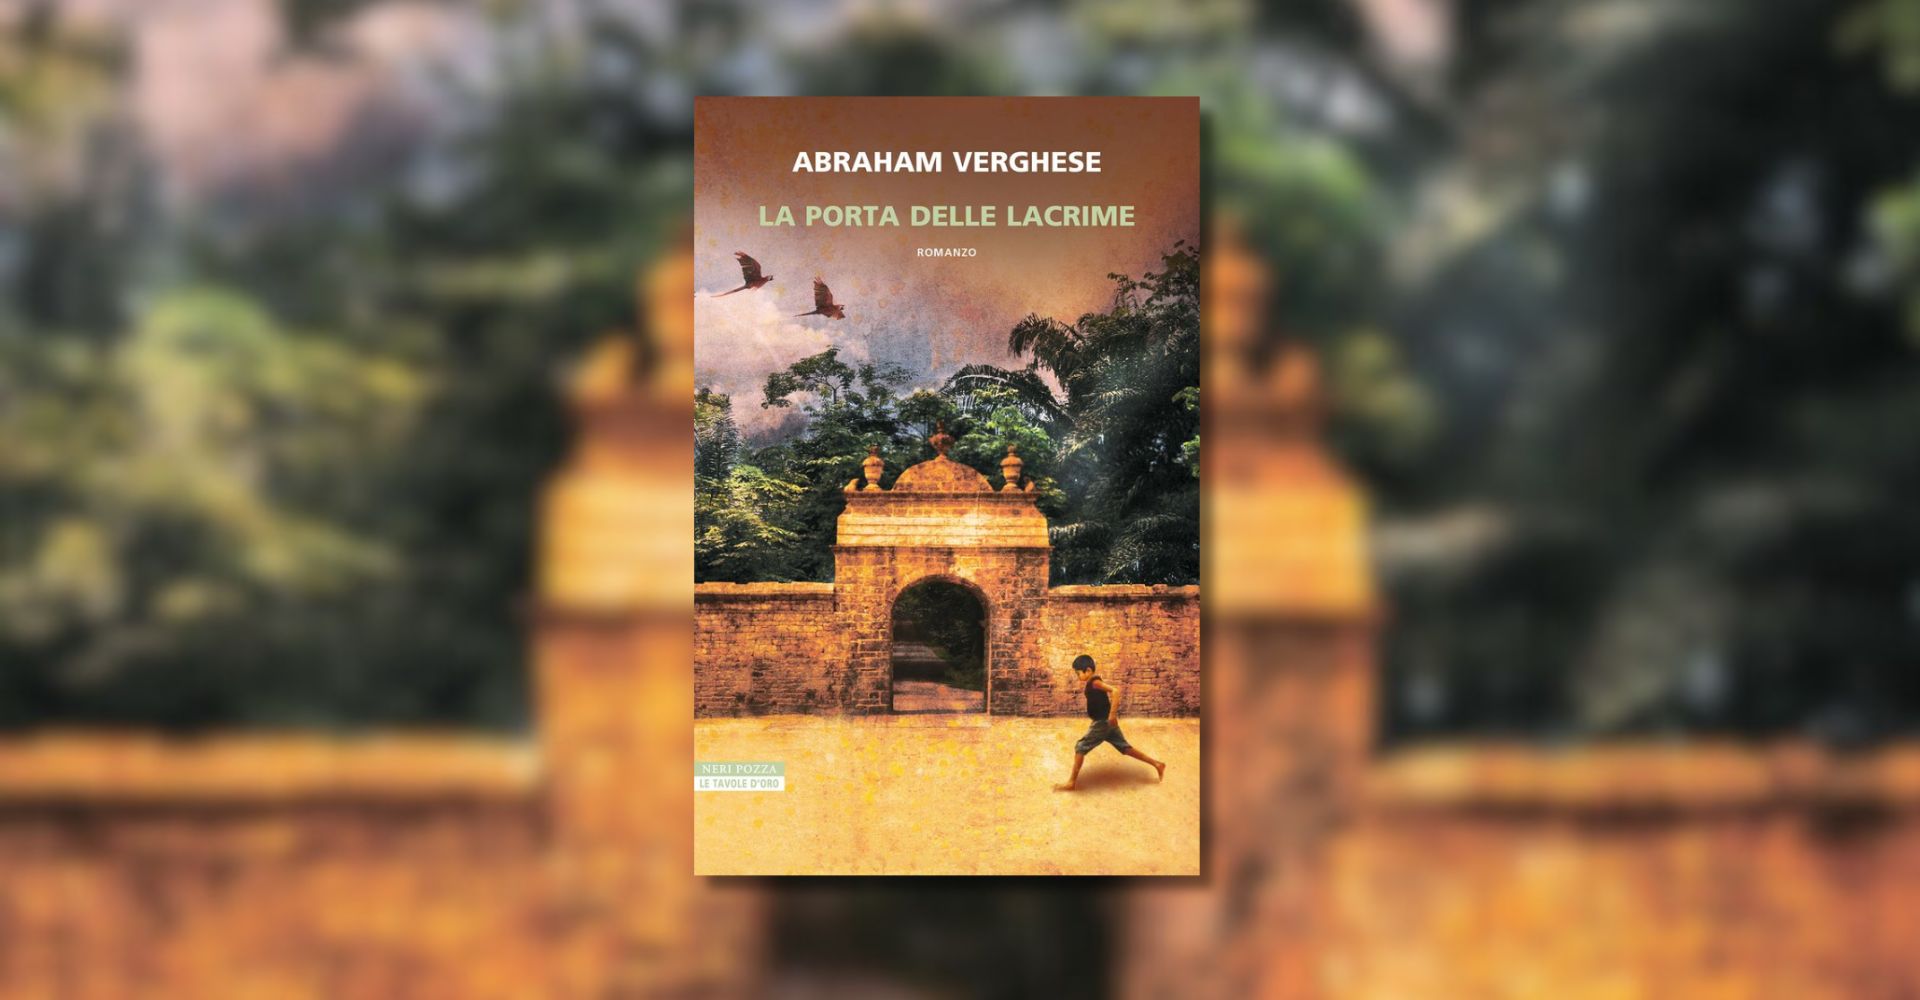 Abraham Verghese ci apre "la porta delle lacrime", romanzo epico